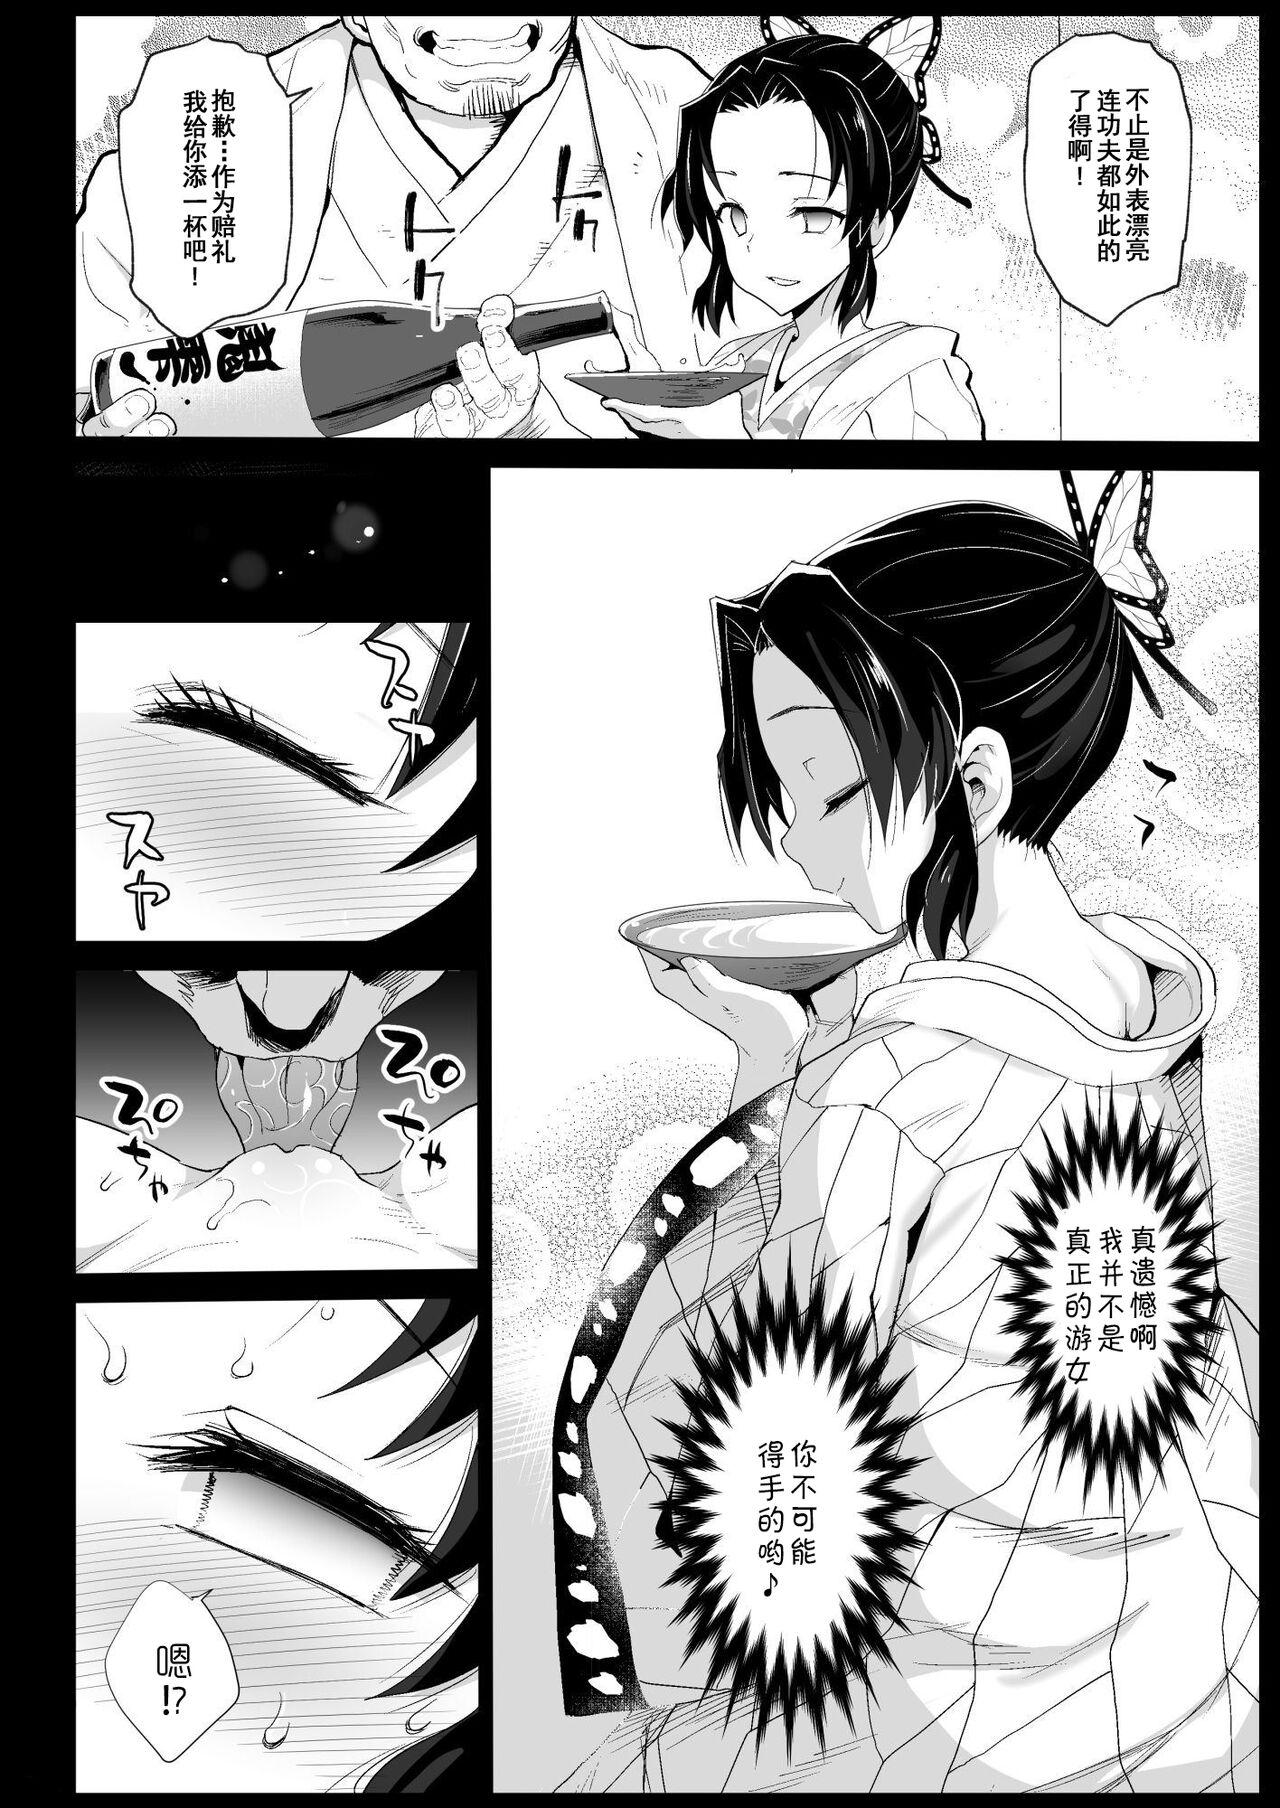 Bigbooty Oni Metsu no Yujo Kochou Shinobu - RAPE OF DEMON SLAYER 7 - Kimetsu no yaiba | demon slayer Nurugel - Page 8